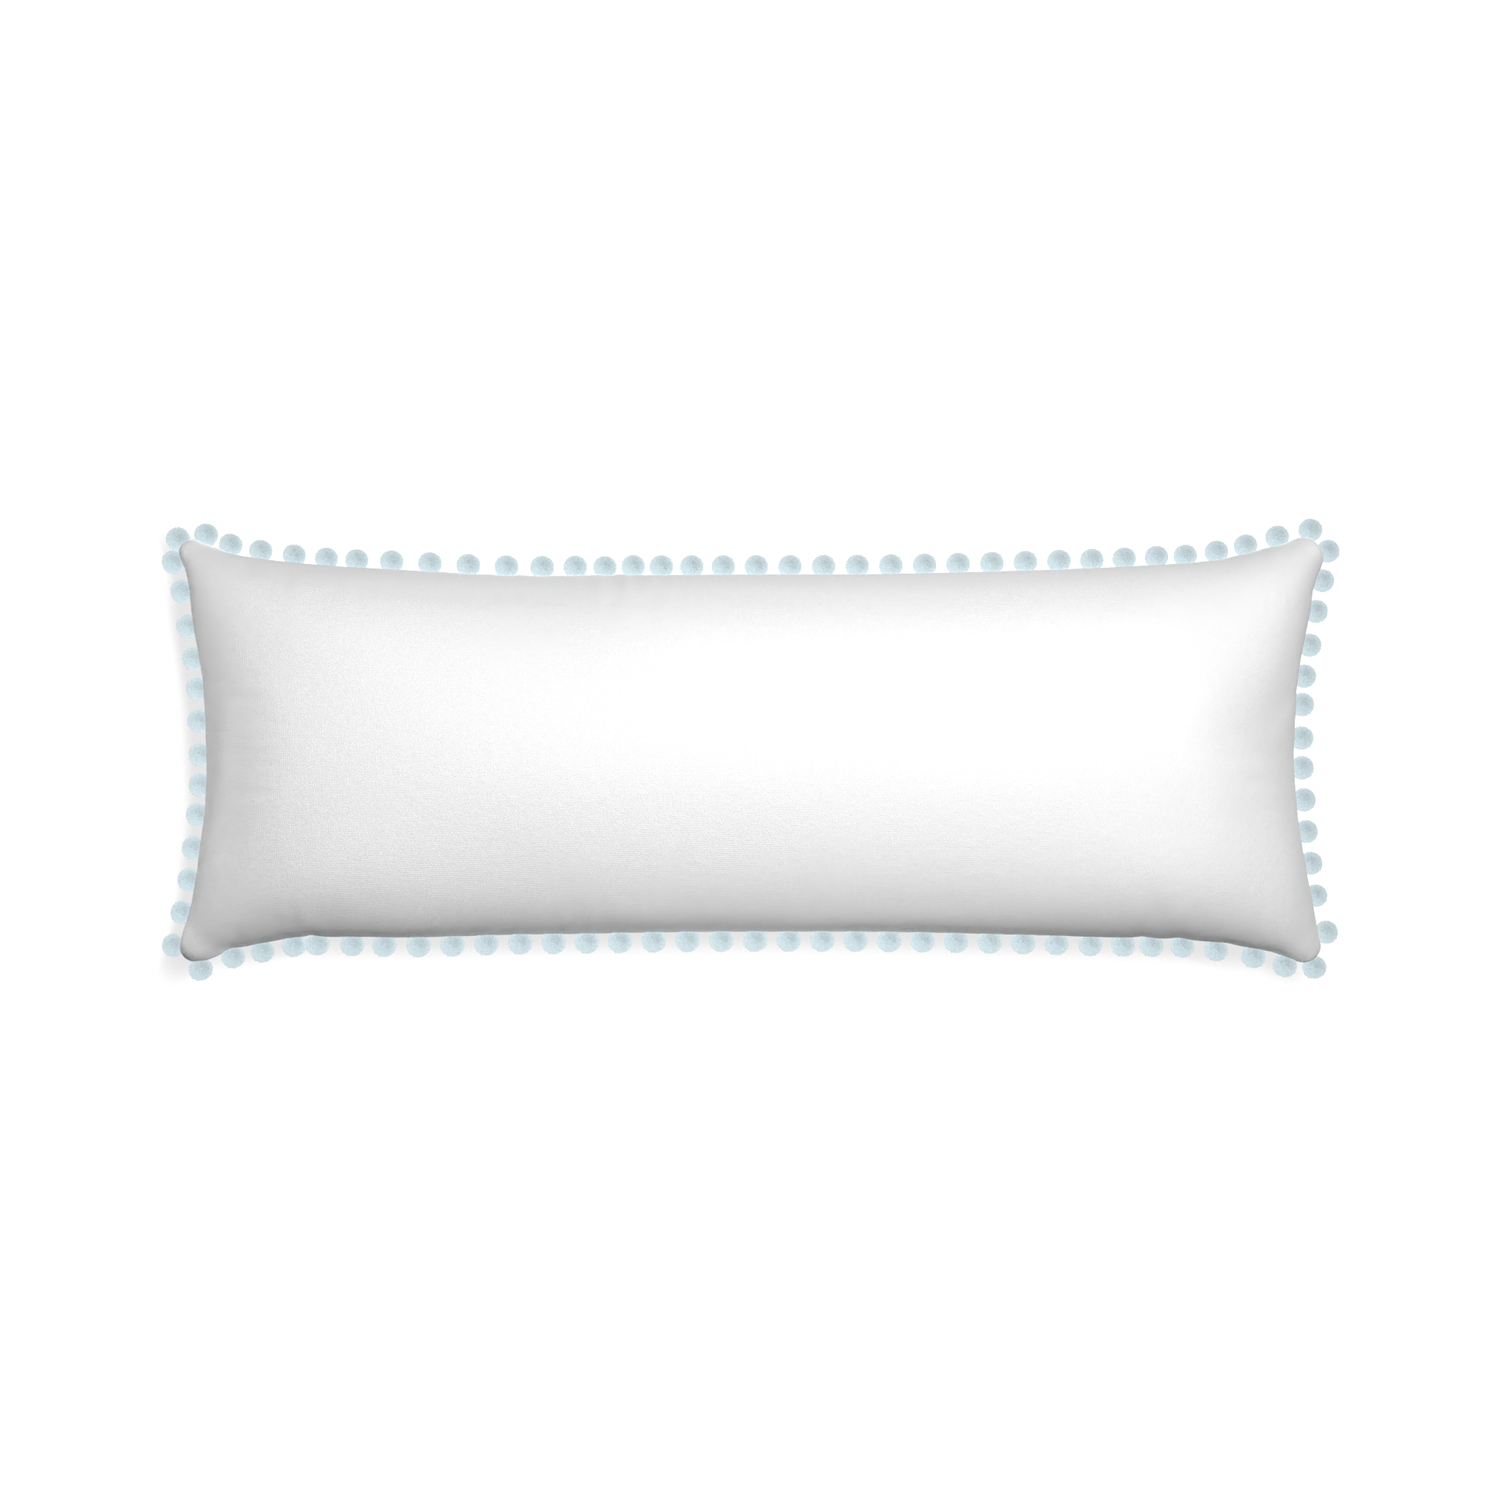 Xl-lumbar snow custom pillow with powder pom pom on white background